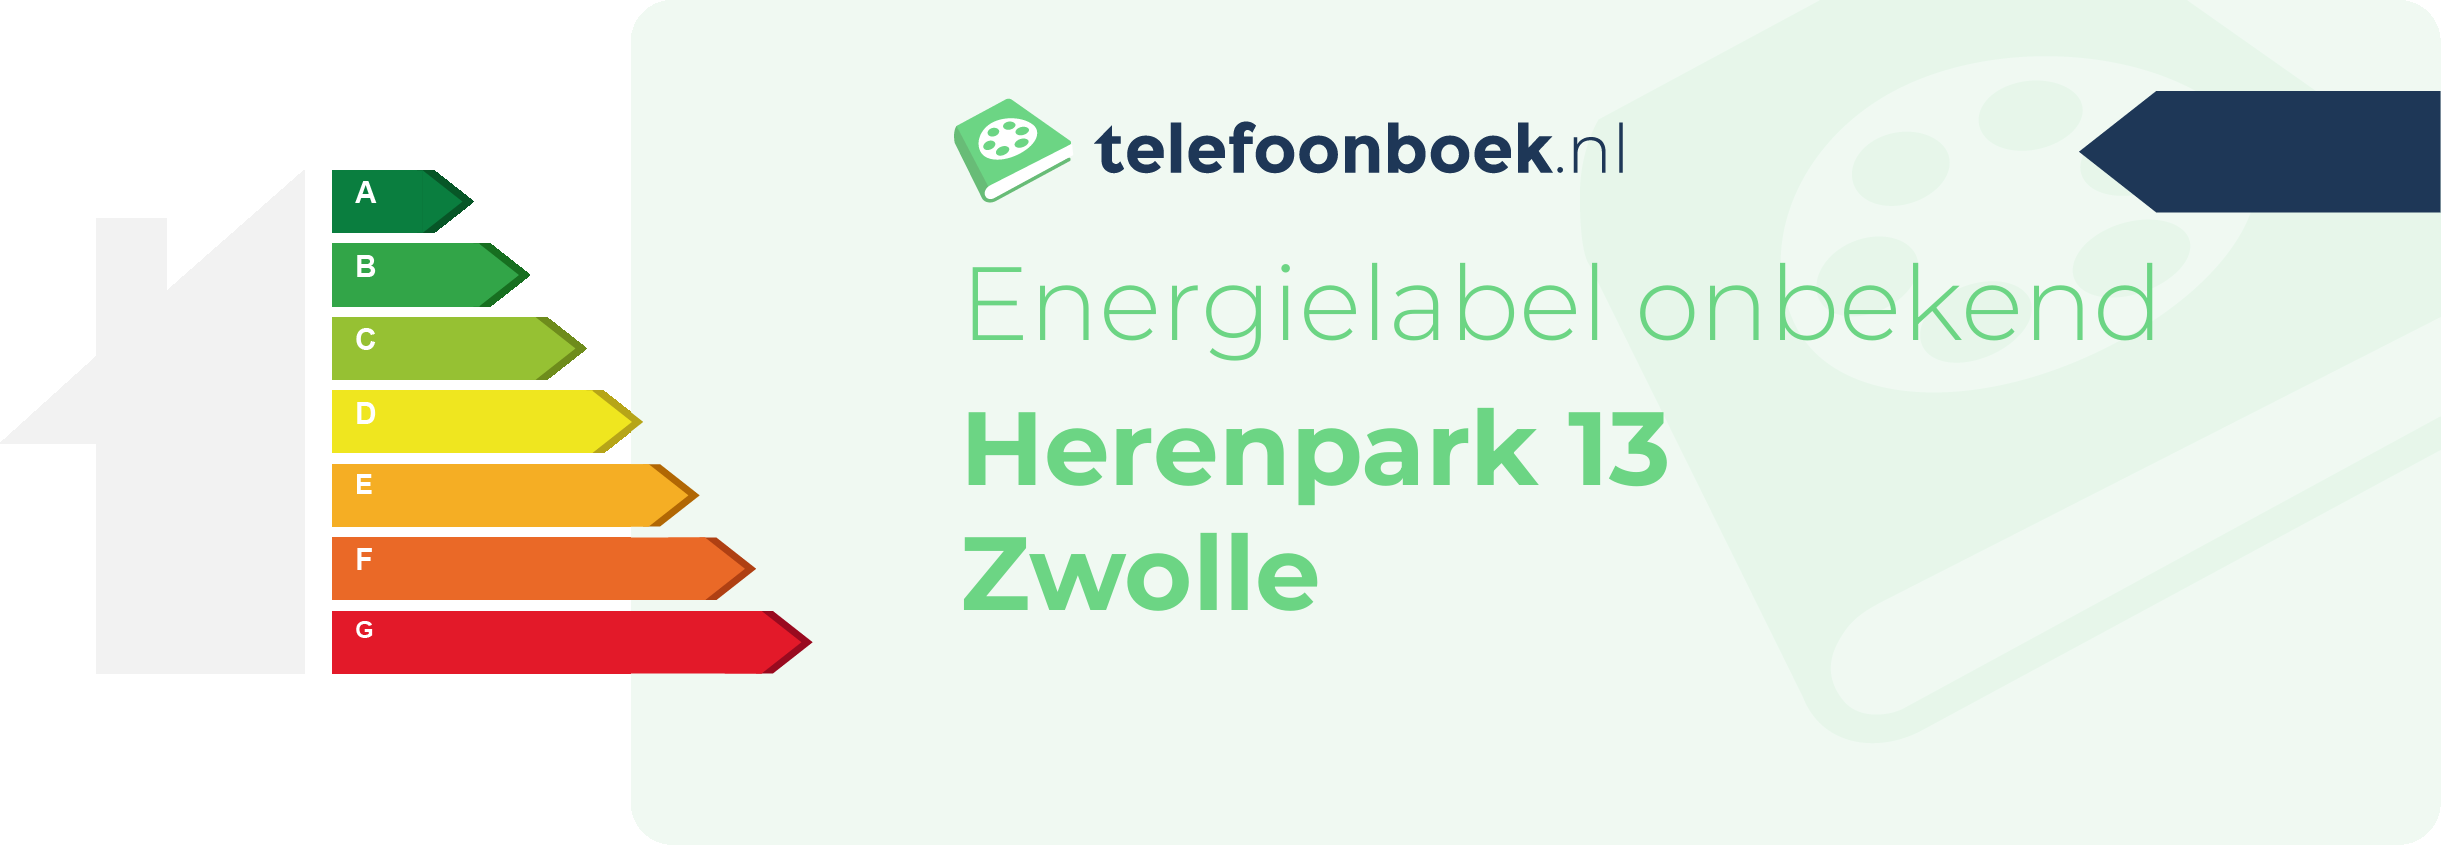 Energielabel Herenpark 13 Zwolle